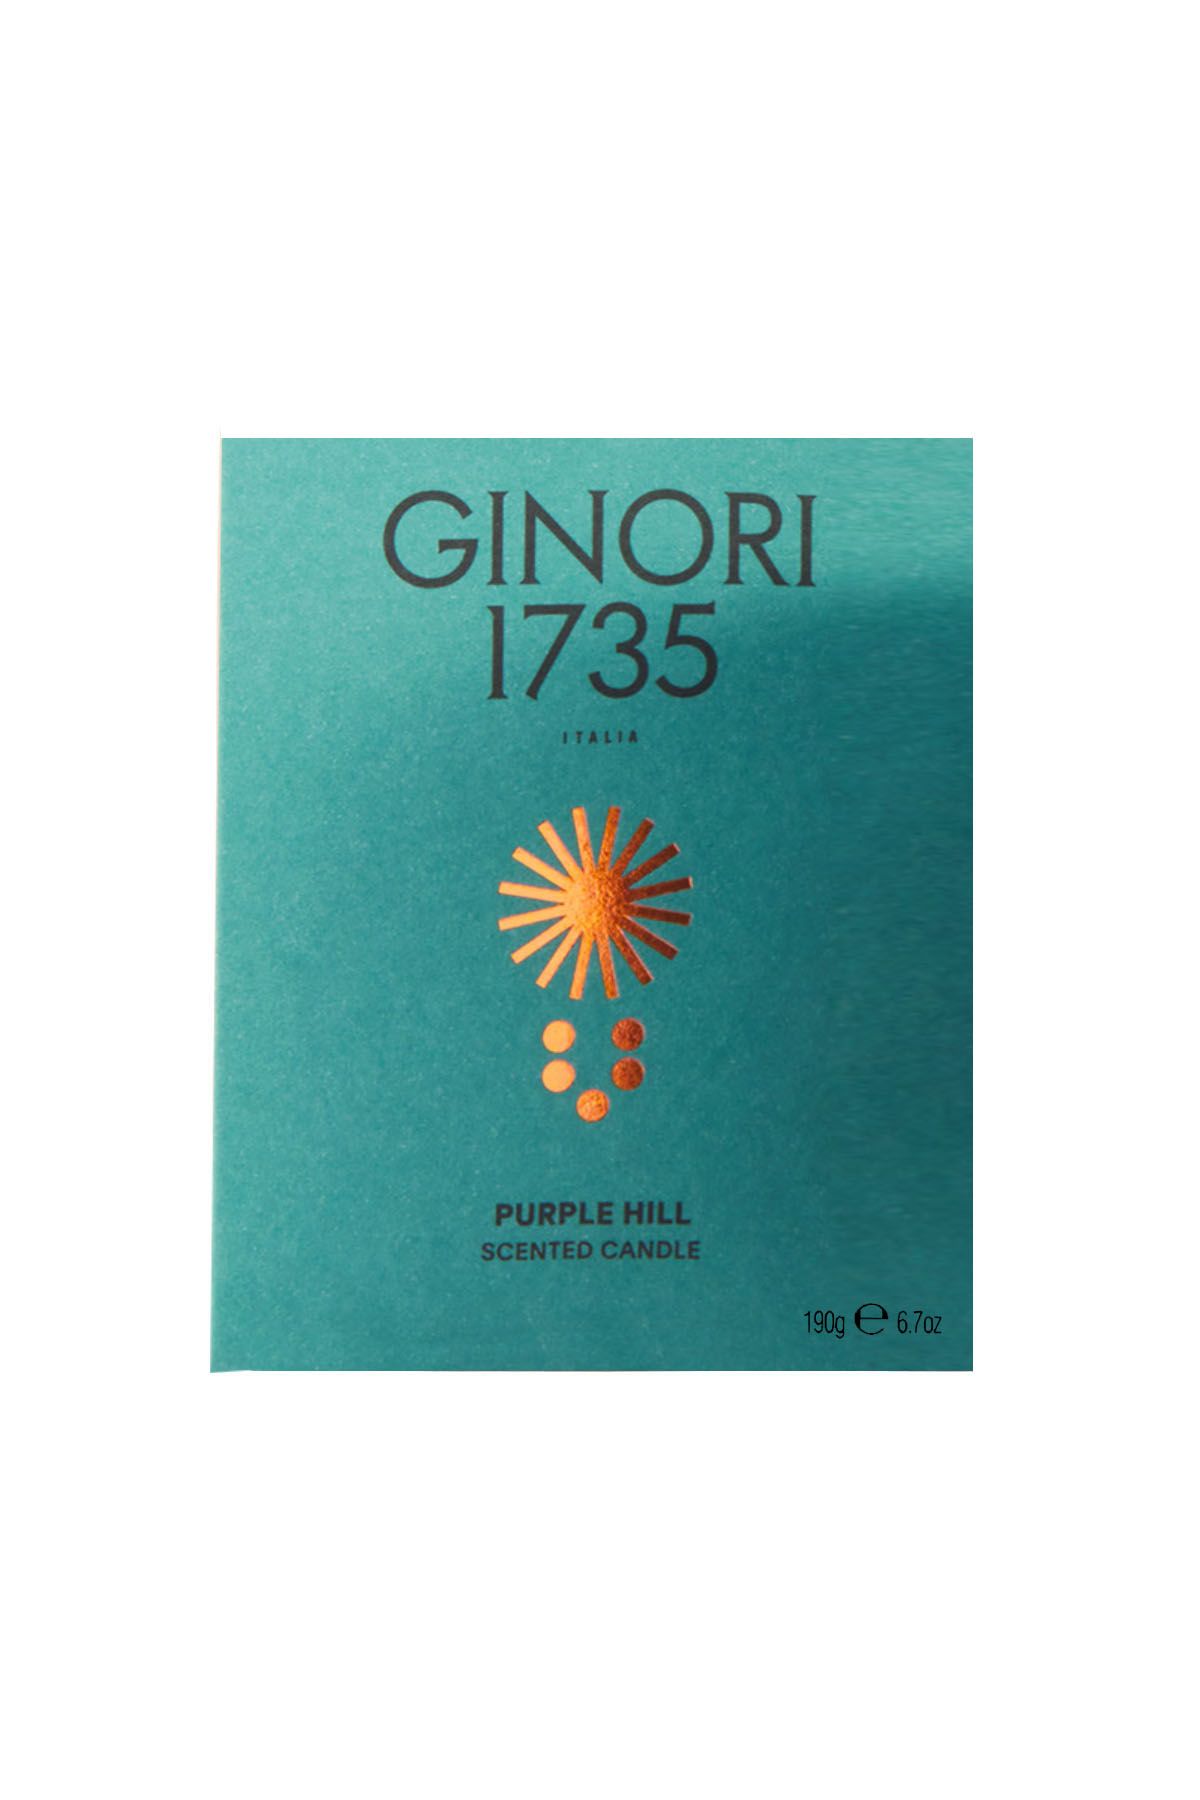 GINORI 1735 purple hill scented candle refill for il seguace 190 gr